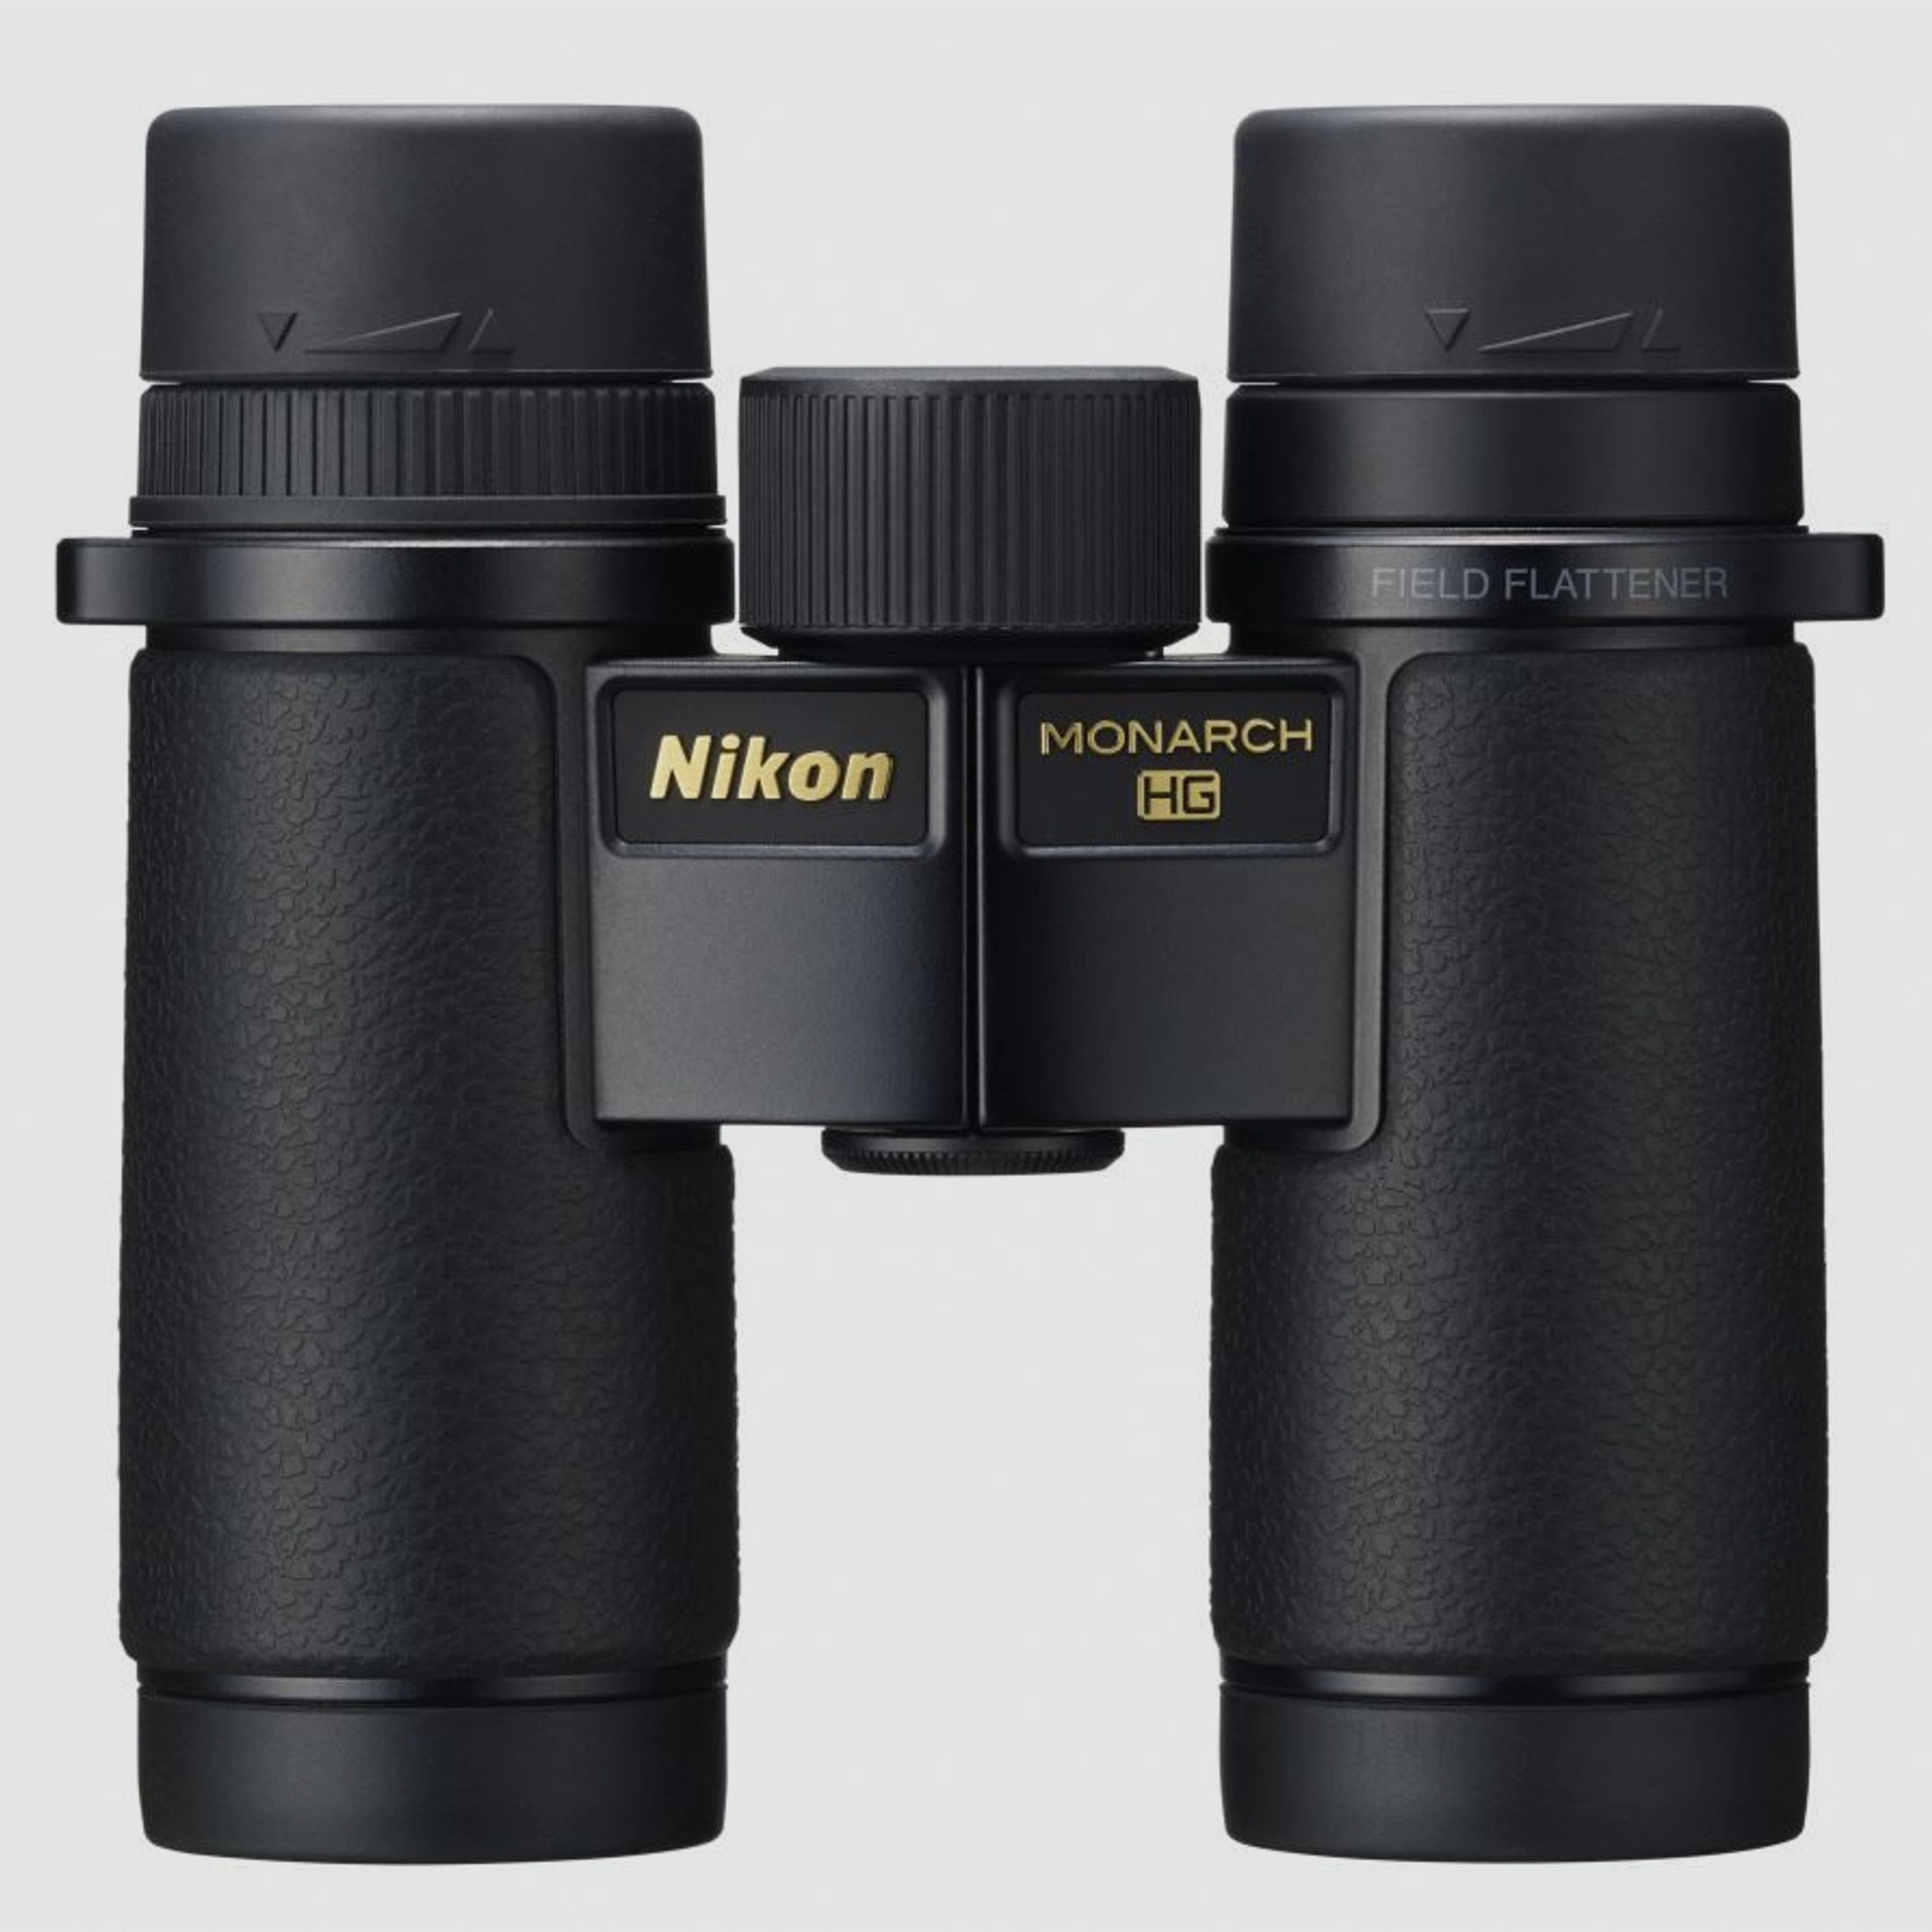 Nikon Nikon MONARCH HG 8x30 -39,95€ 5% Fernglas Rabatt 759,05 Effektivpreis